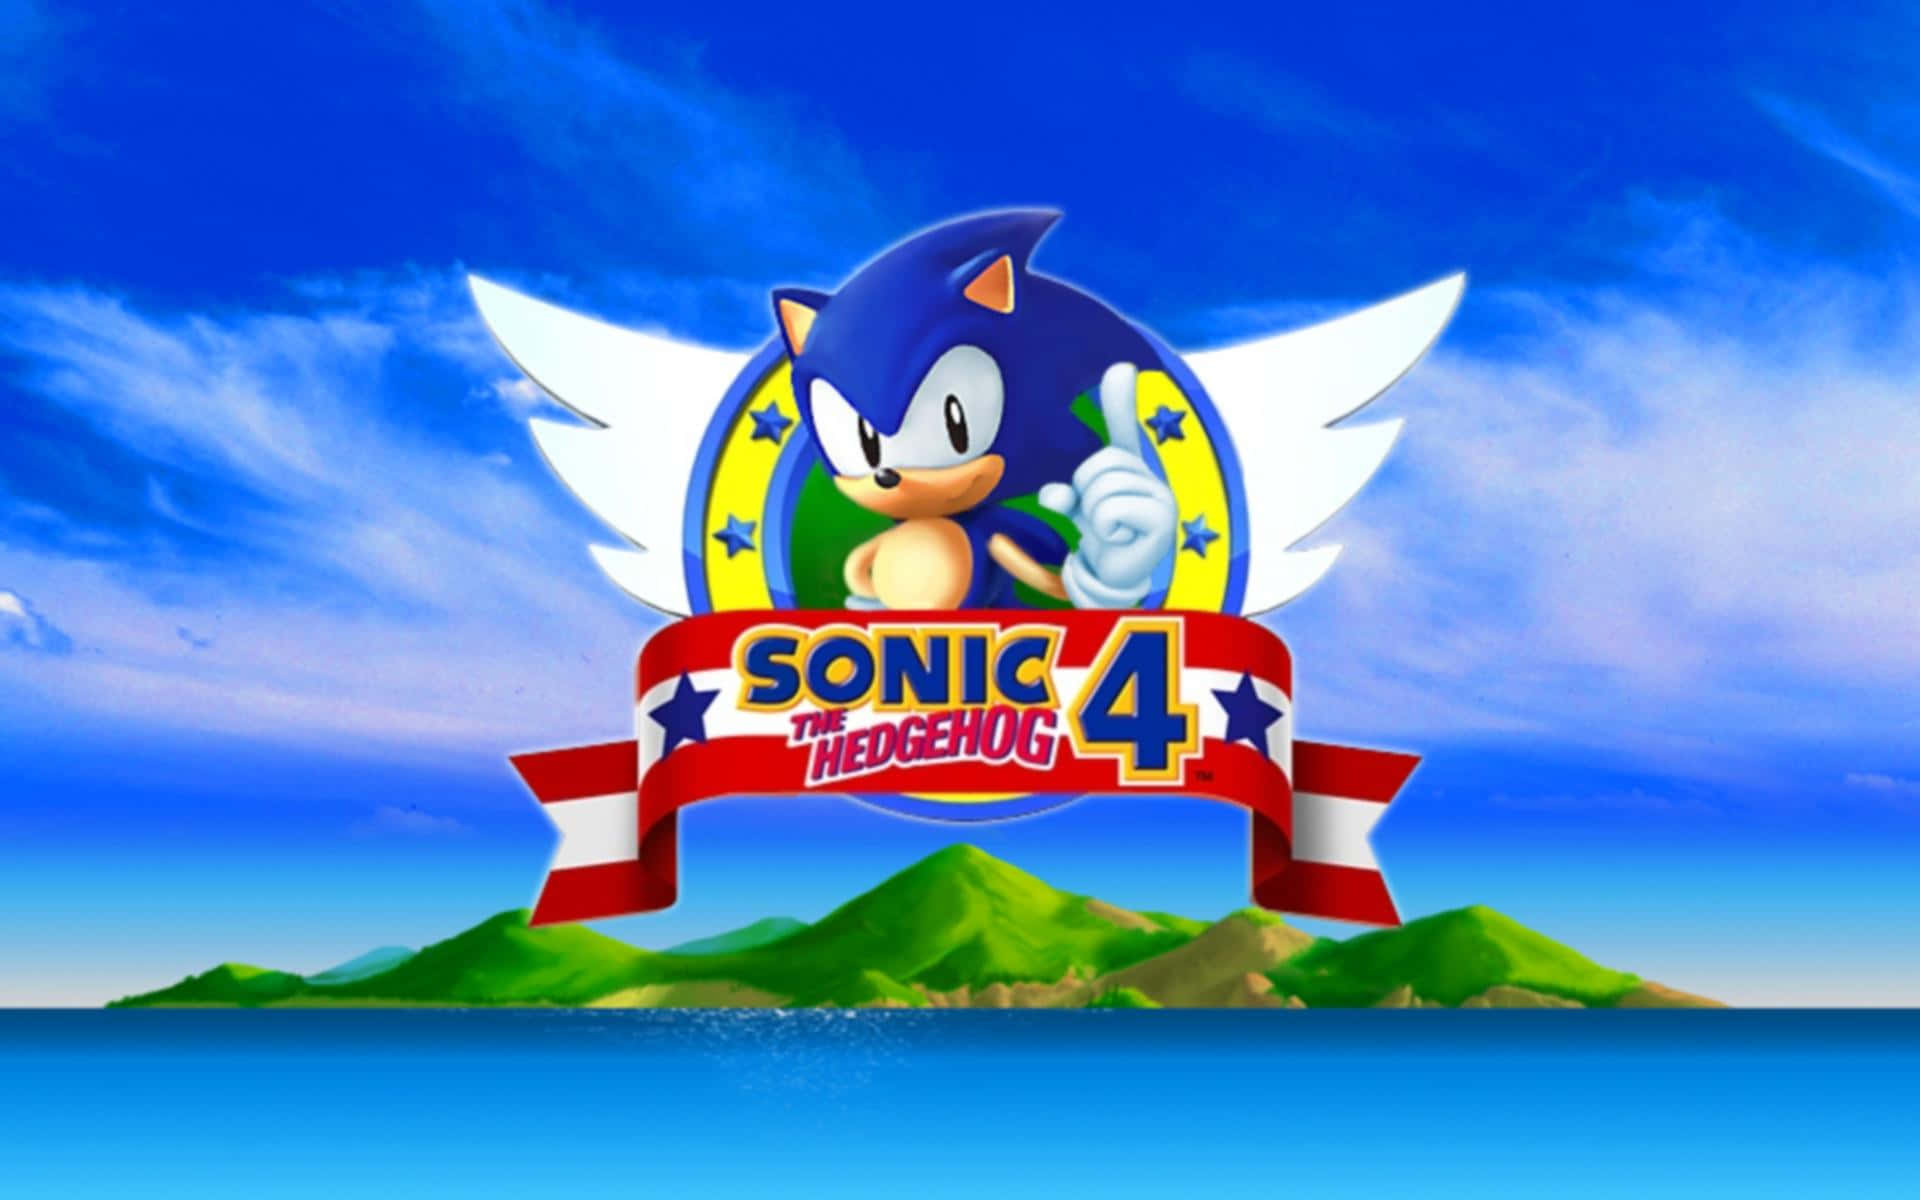 Preparatia Correre Attraverso Bellissimi Paesaggi 4k Con Sonic The Hedgehog! Sfondo